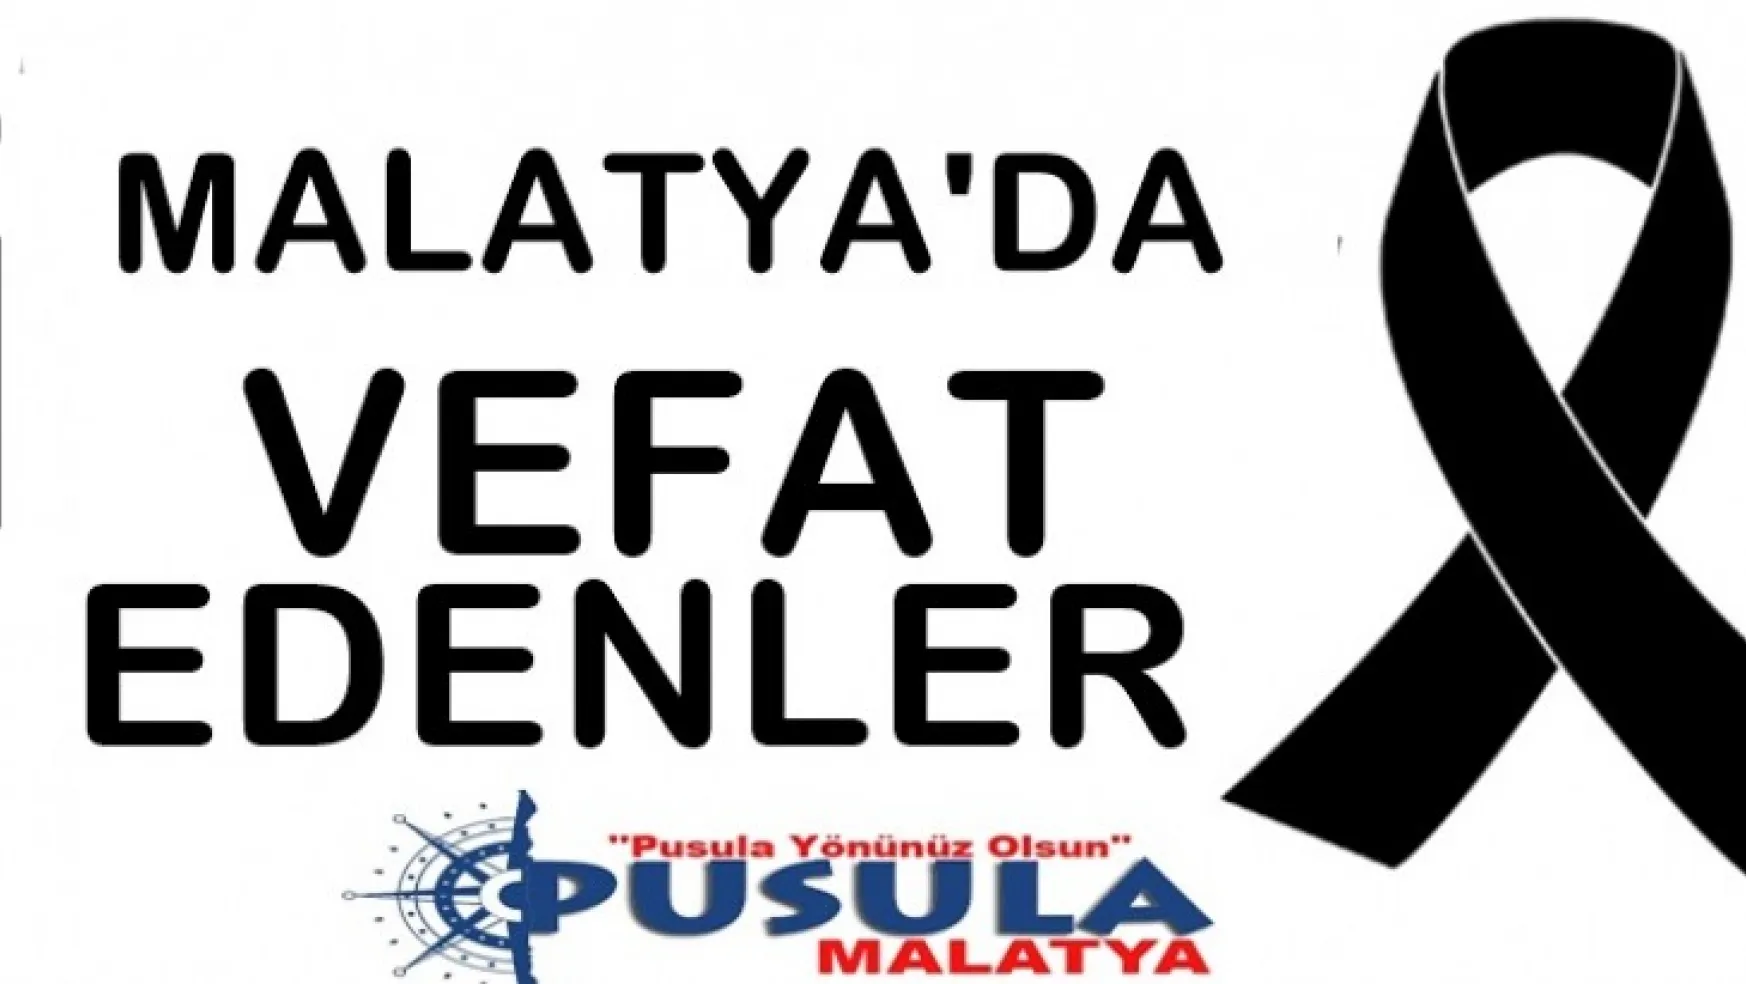 Malatya'da Bugün 25 Kişi Vefat Etti